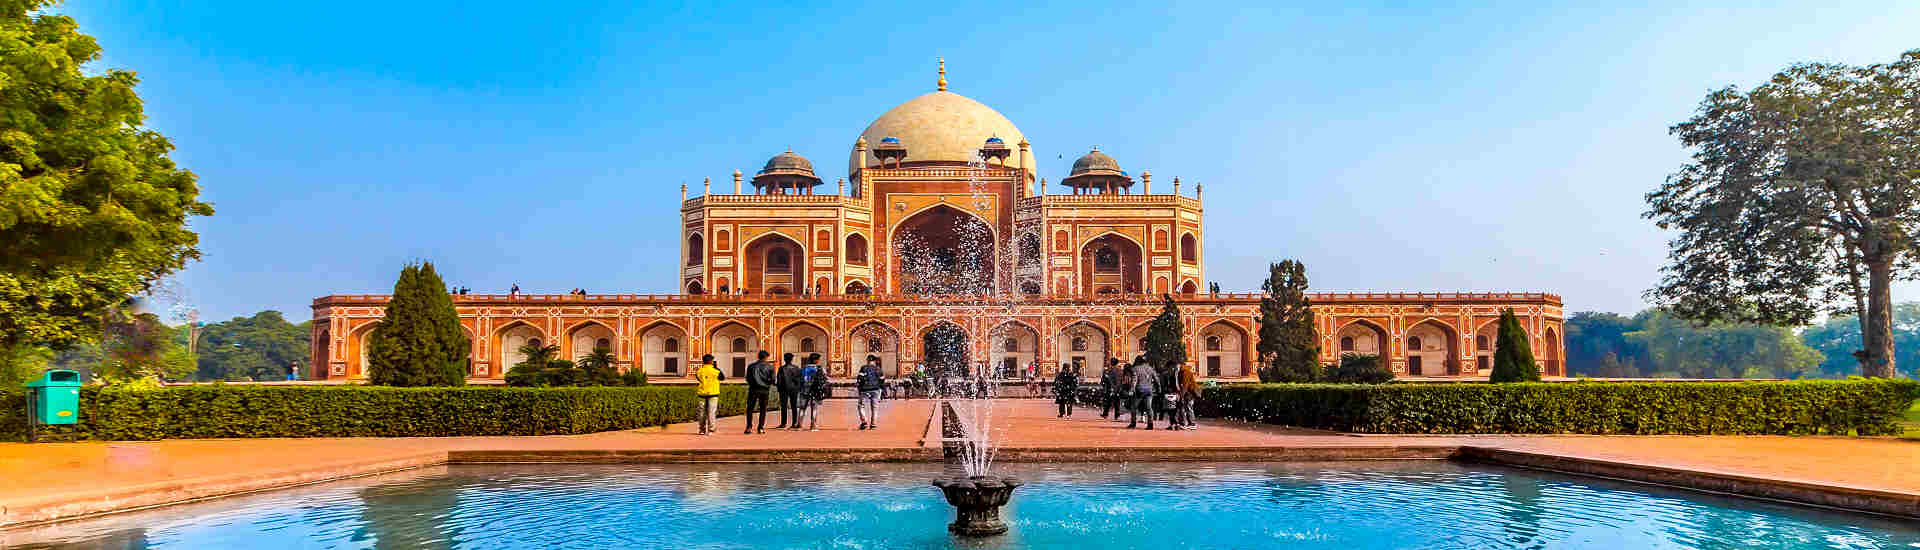 Entdecken Sie die beste Reisezeit für Indien und erleben Sie das beeindruckende Humayun-Mausoleum in voller Pracht!